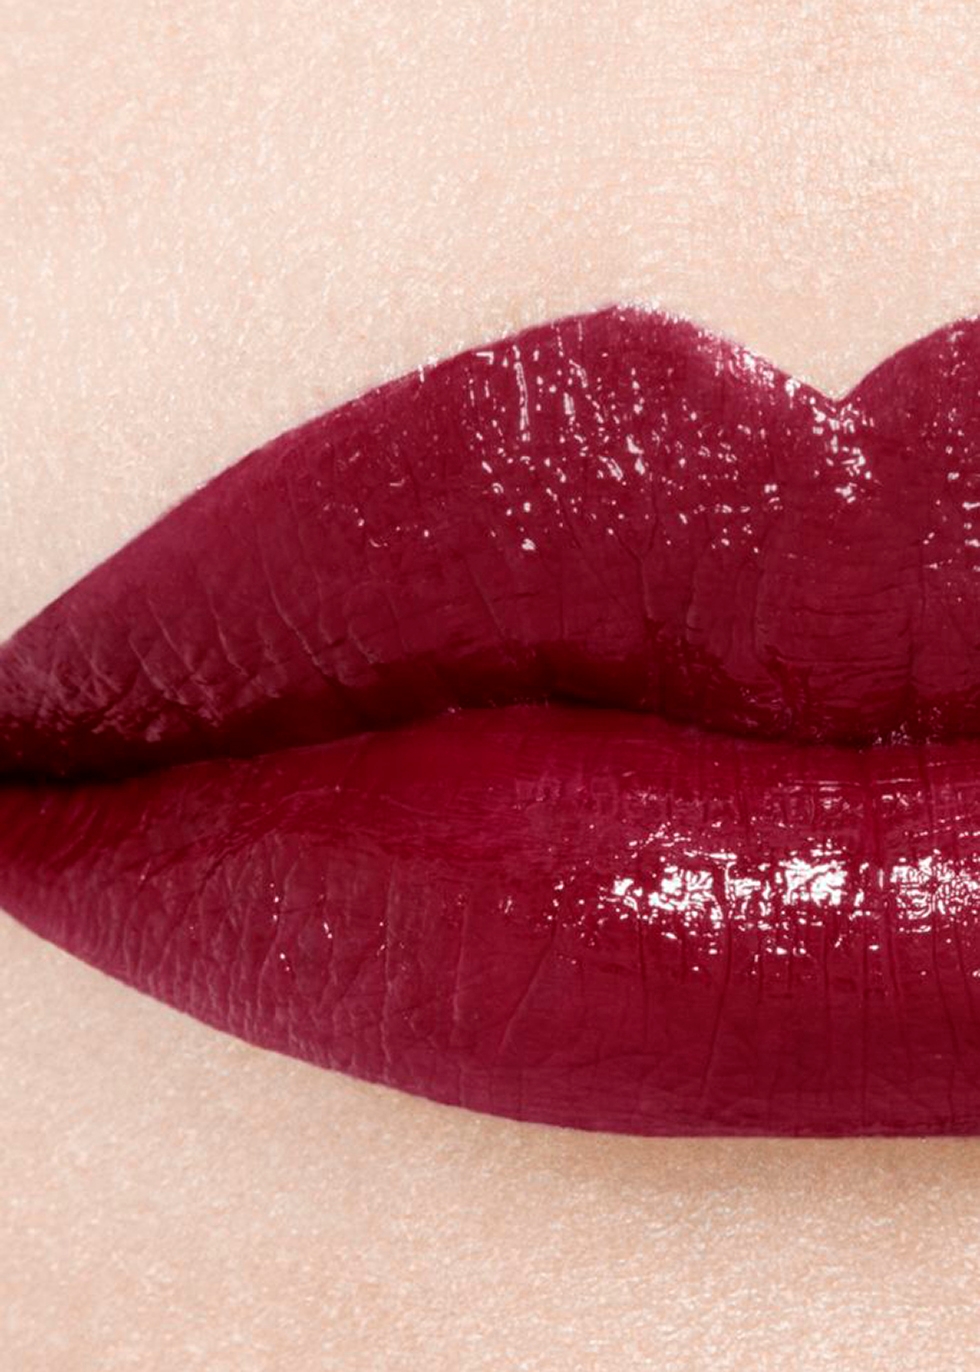 Chanel Le Rouge Duo Ultra Tenue LongWear Liquid Lipsticks  Review  Wear  Test  YouTube